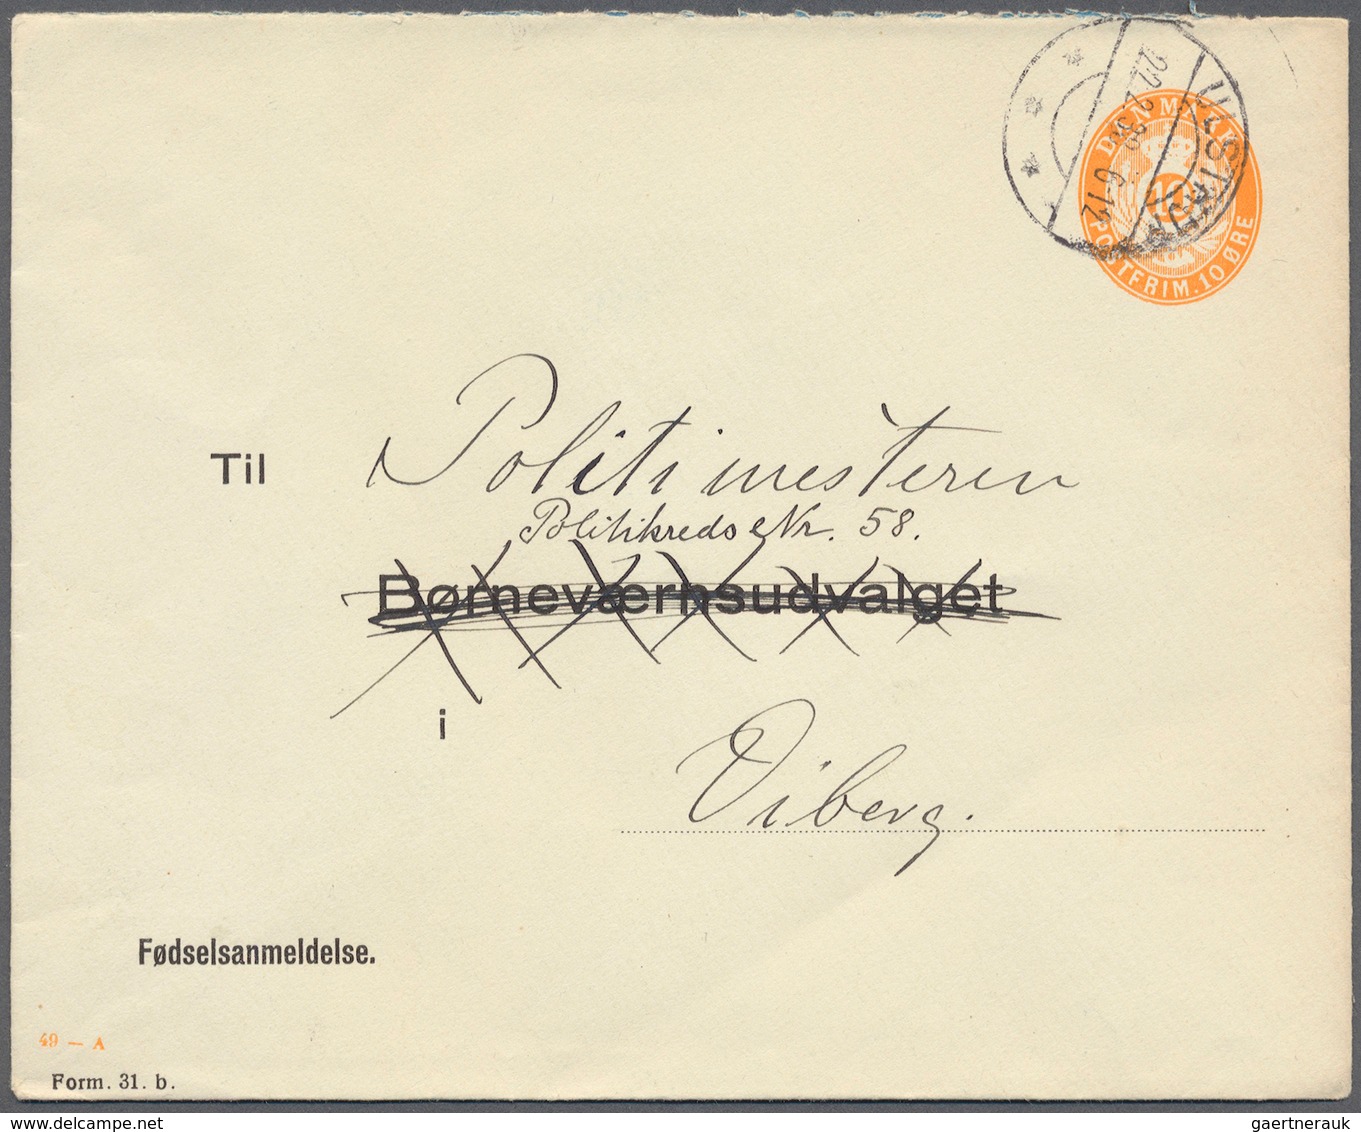 26235 Dänemark: 1890 (ab), dabei interessante Ganzsachen, Flugpost, alte Ansichtskarten, Perfins u. a.